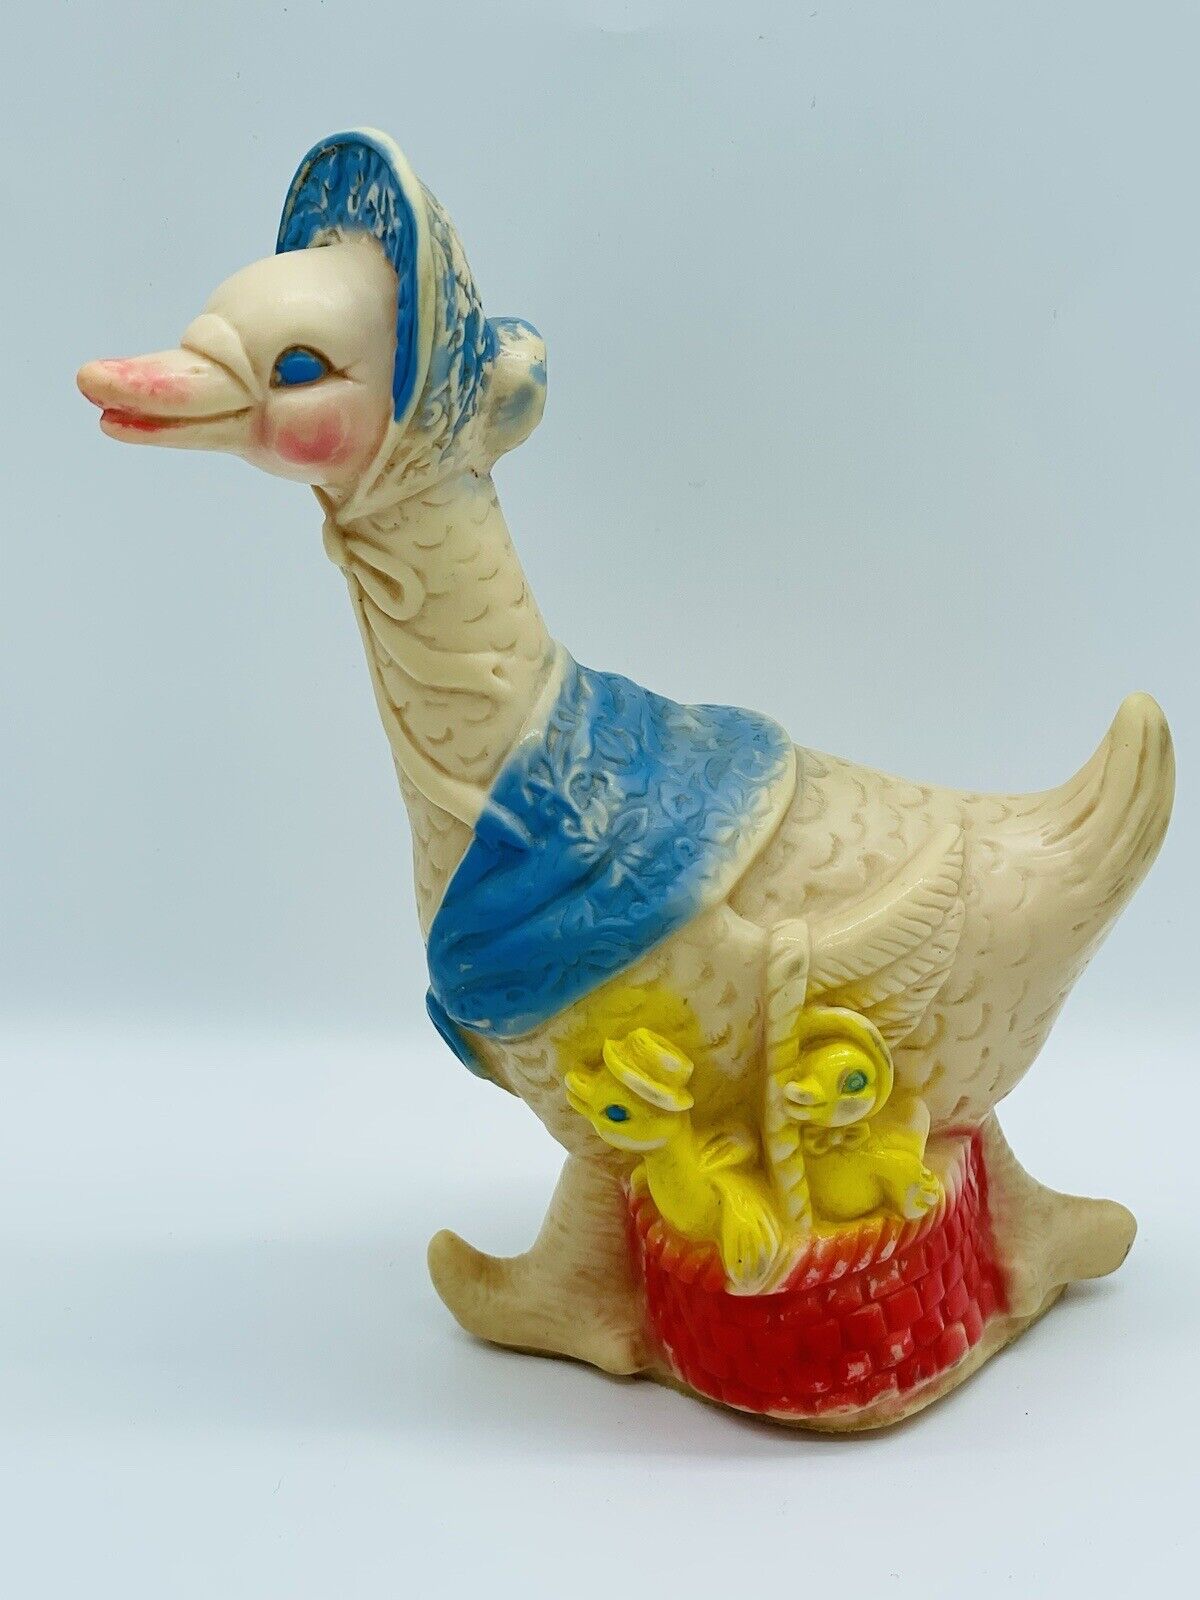 Vintage Soft Vinyl Rubber Squeak Toy Sun Rubber Co. Goose Duck Ducklings